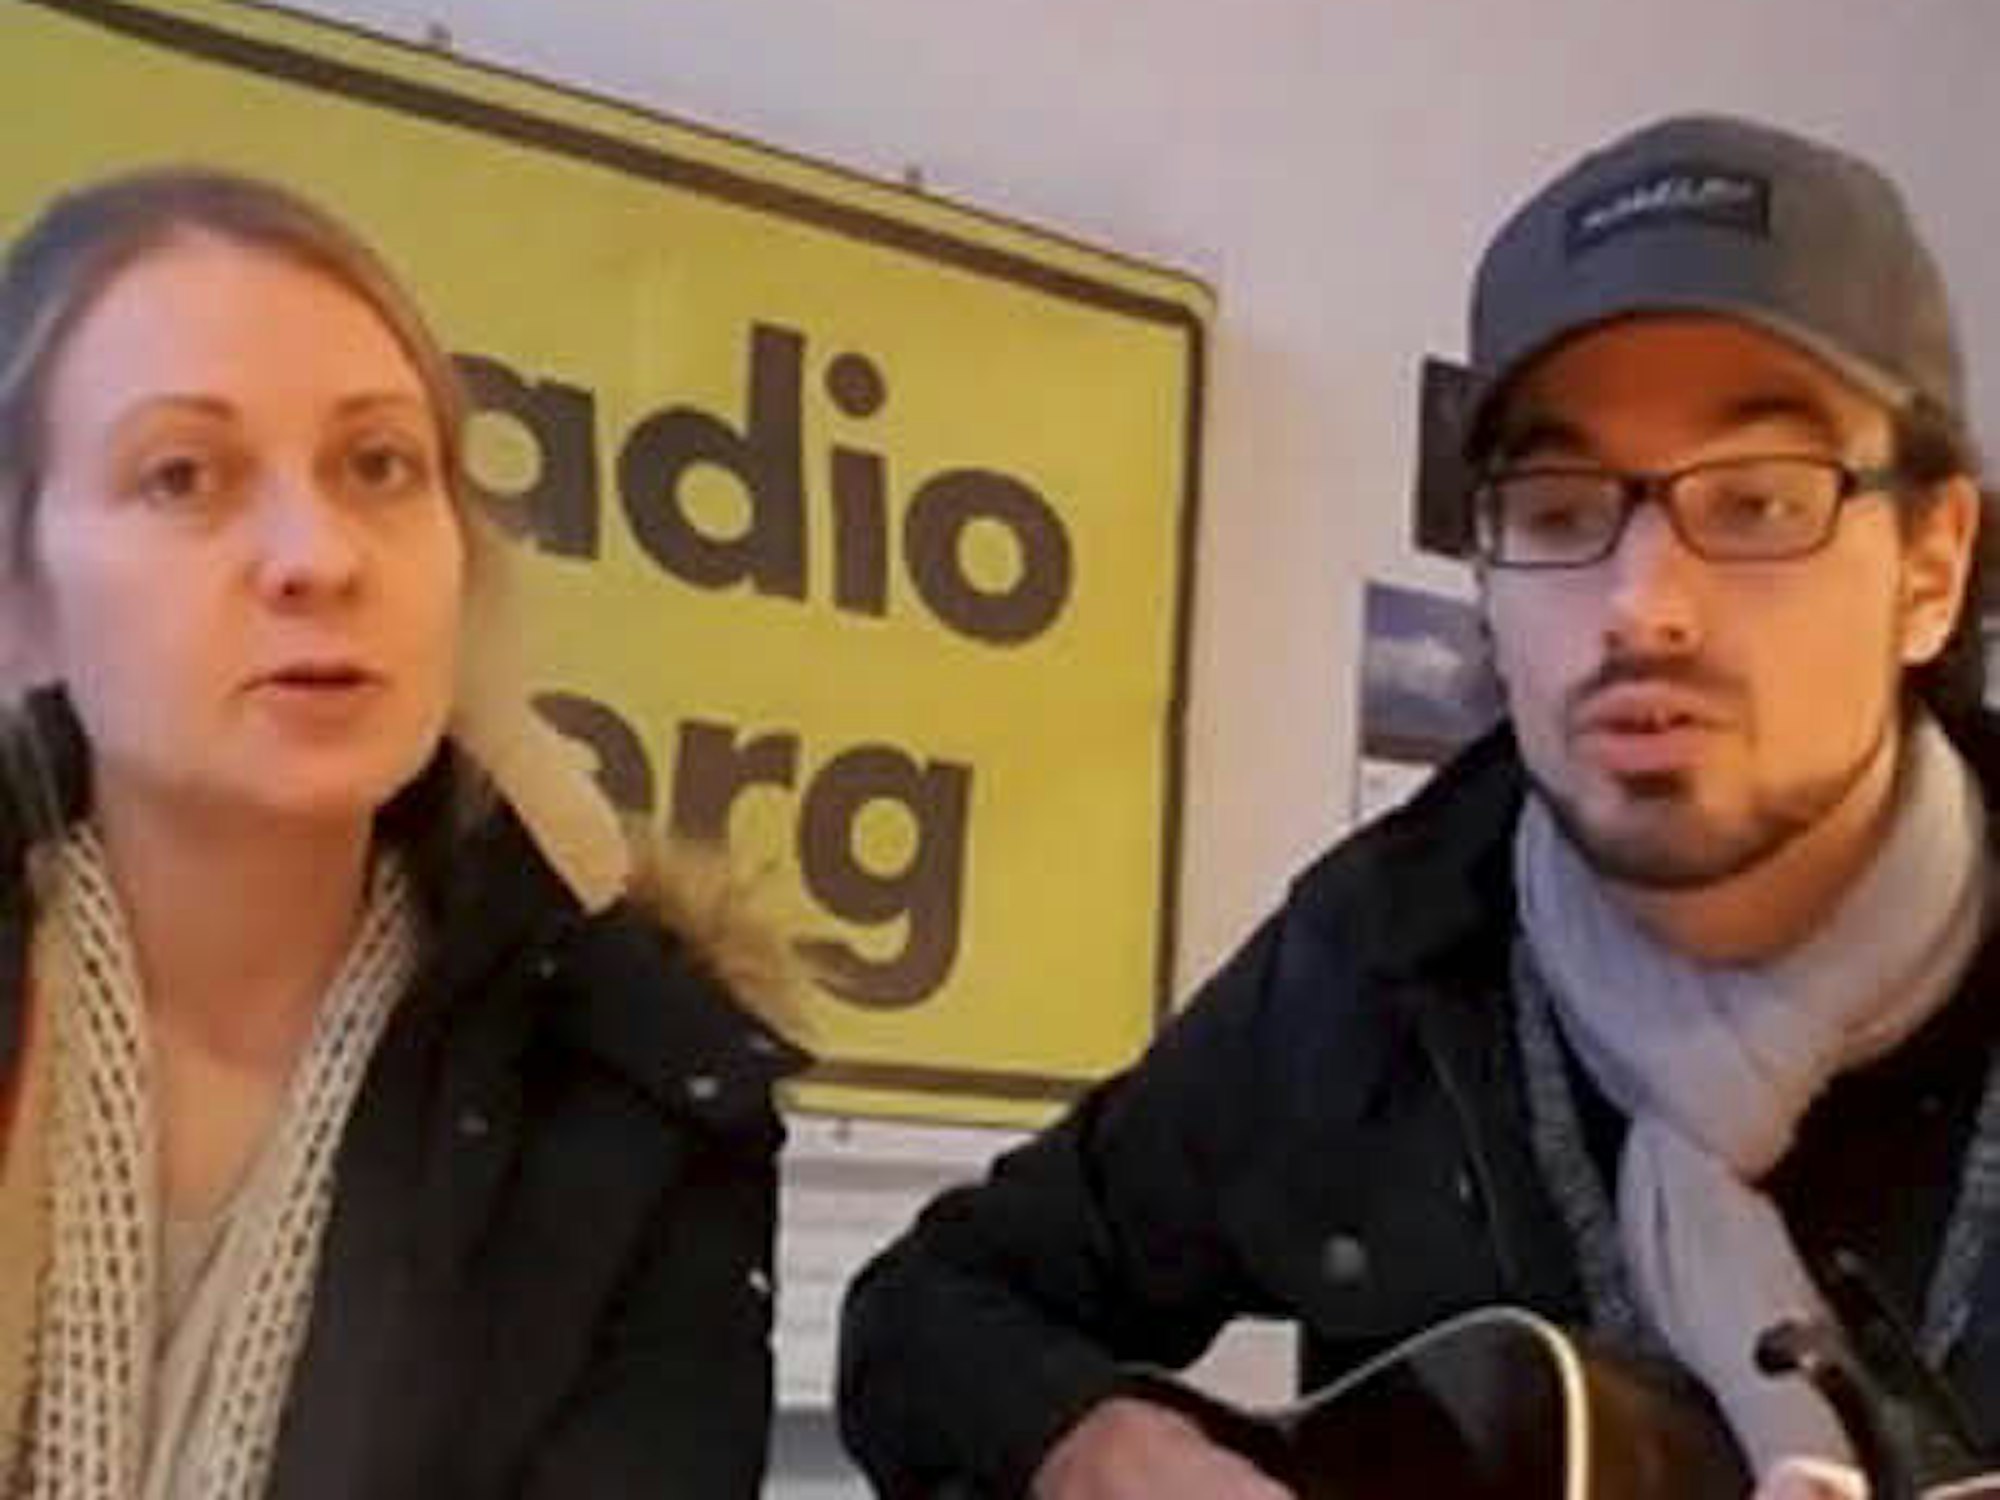 Stromlose Songs: In ihrer Not bedienten sich die Radio-Moderatoren Michi Arlt und Sebastian Poullie des Kanals Facebook, um aus dem Studio ihre Hörer mit selbst eingesungenen Liedern zu erreichen.